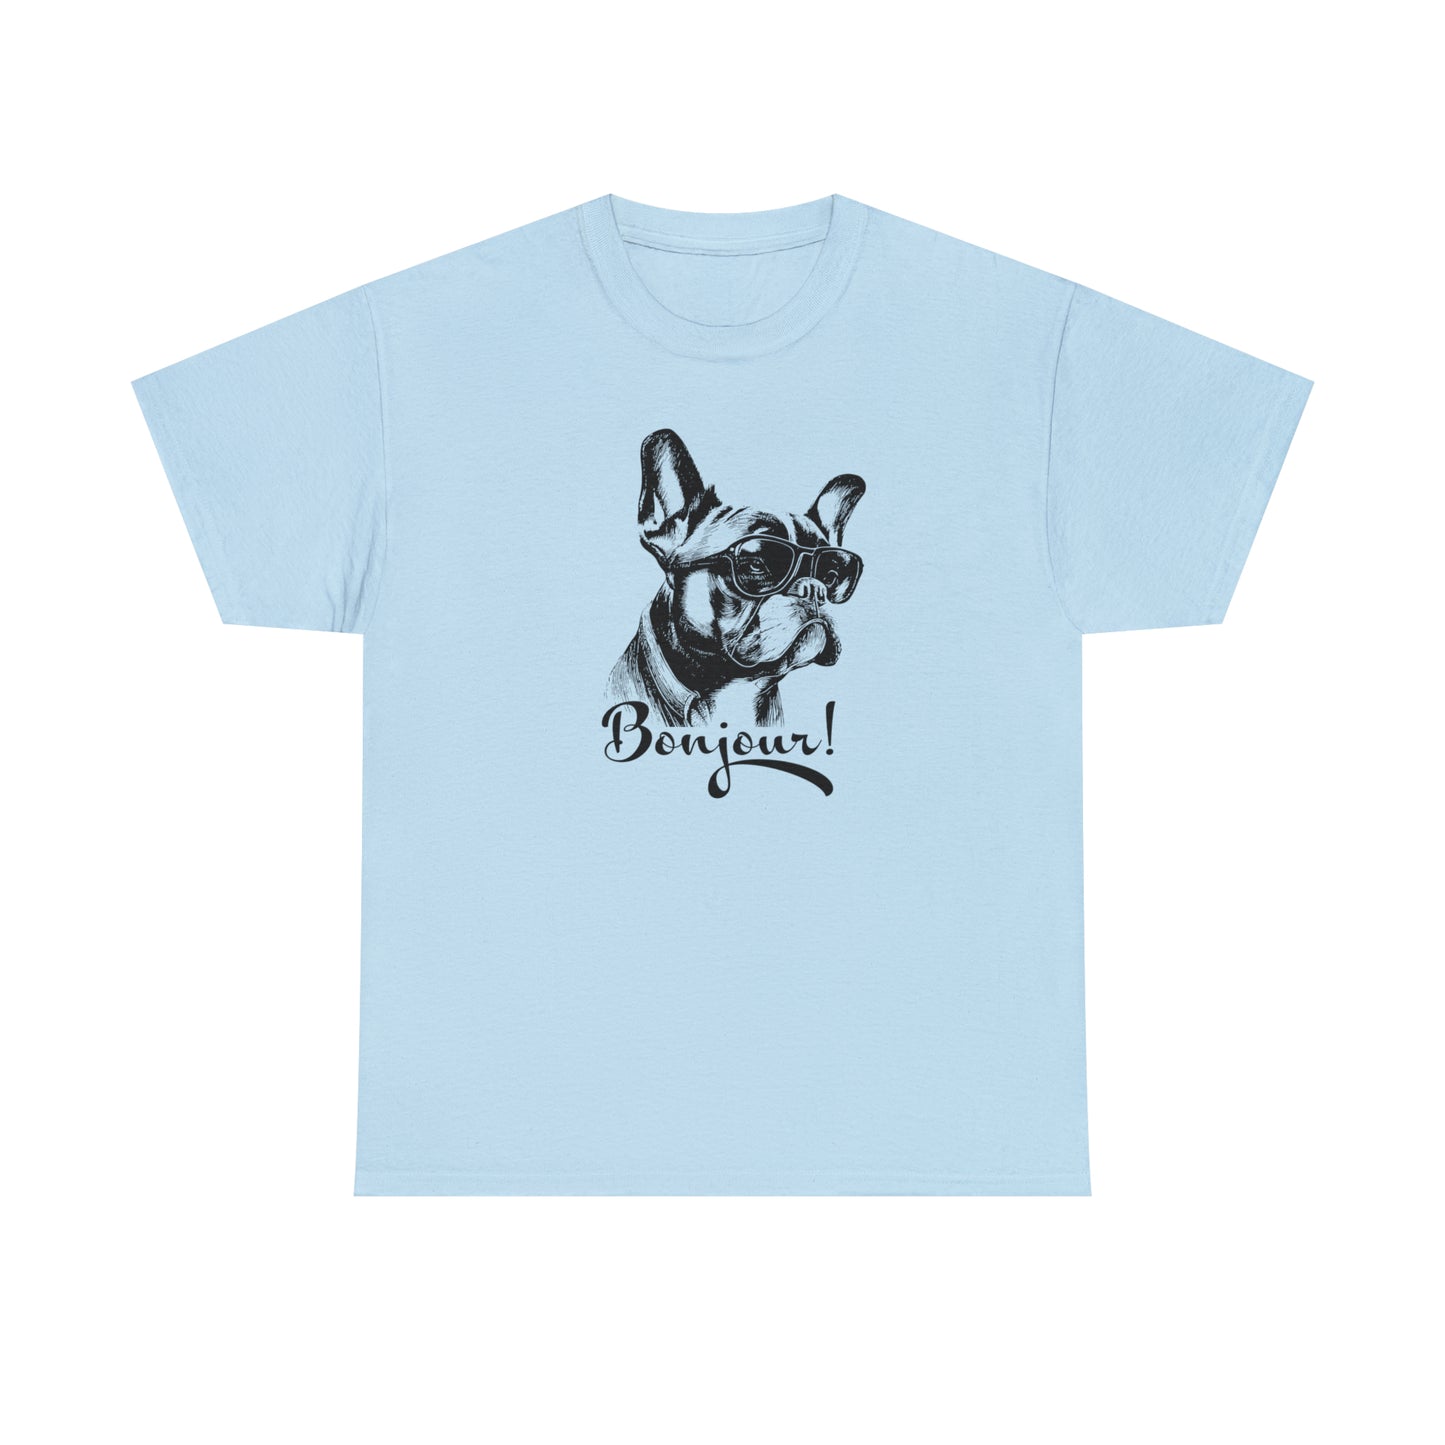 French Bulldog T-Shirt Cute Frenchie TShirt French Bulldog Lover Shirt Popular Dog Shirt Dog Lovers Gift T Shirt French Dog Animal Lover Tee